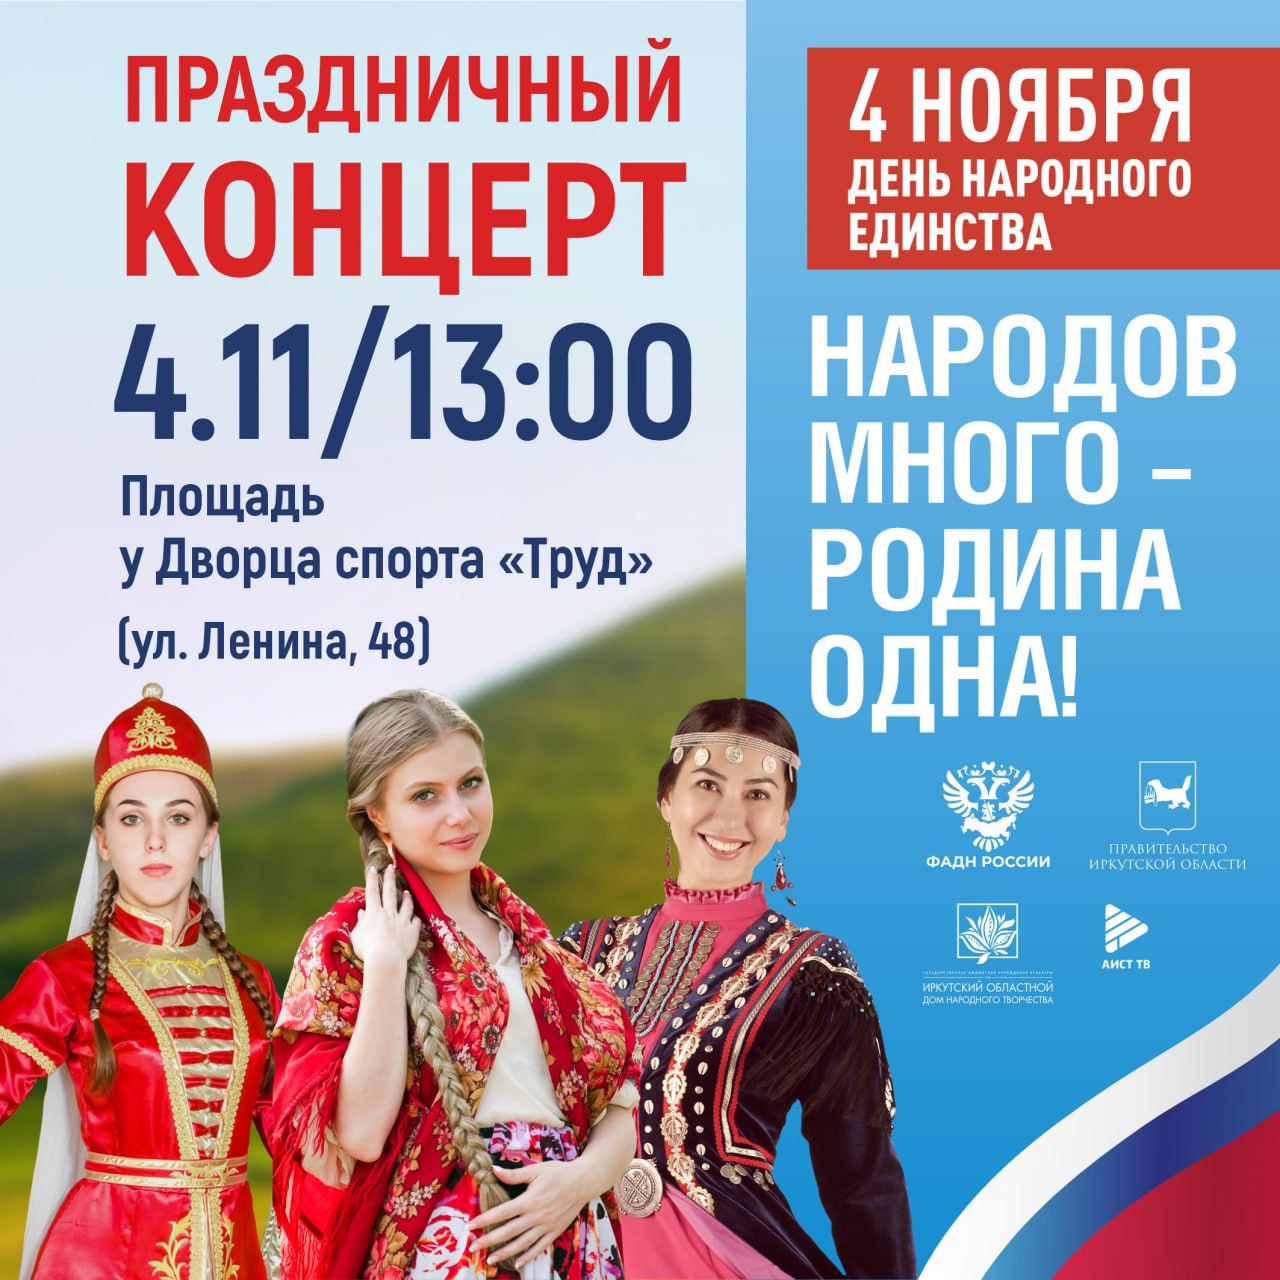 Хоровод дружбы и концерт проведут в Иркутске 4 ноября, в День народного единства